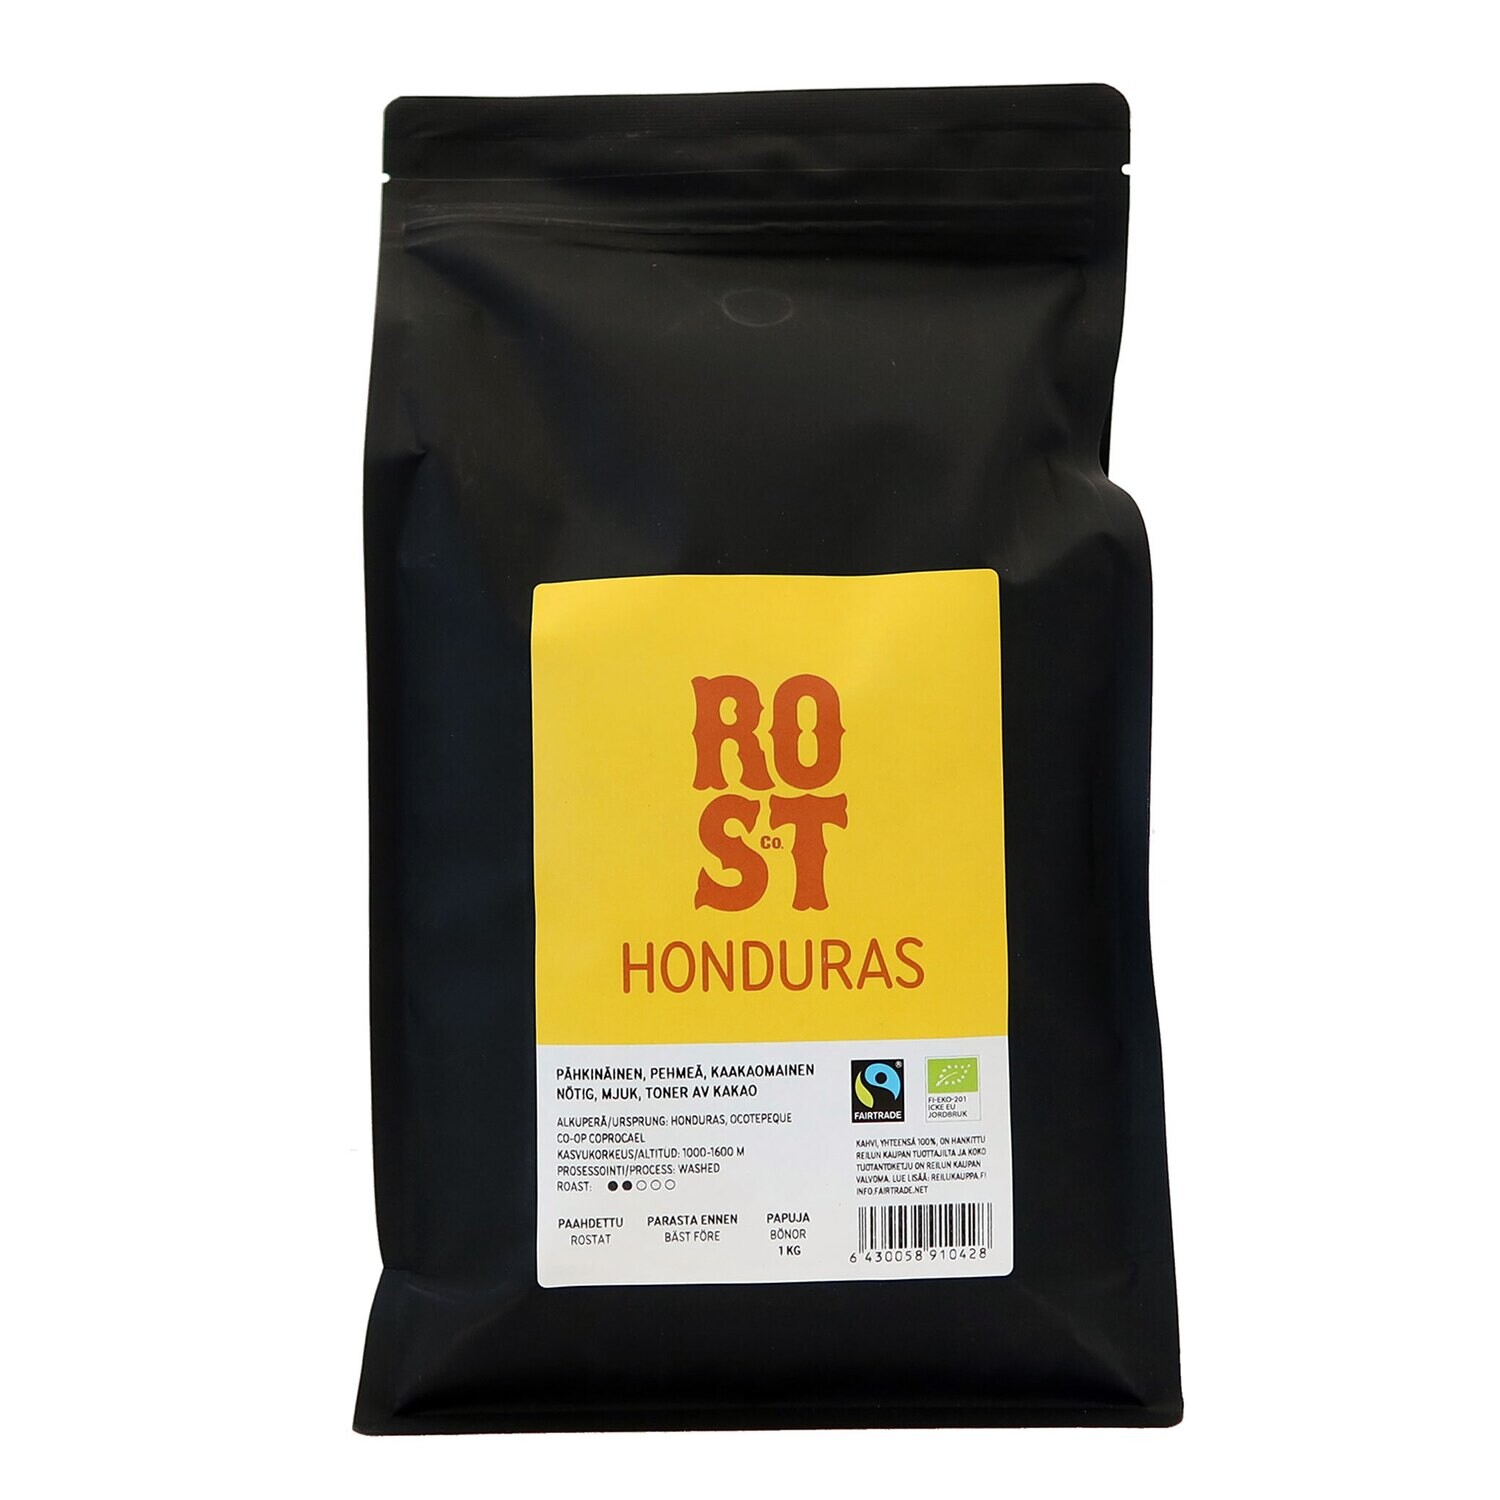 ROST & Co. Honduras 1 Kg